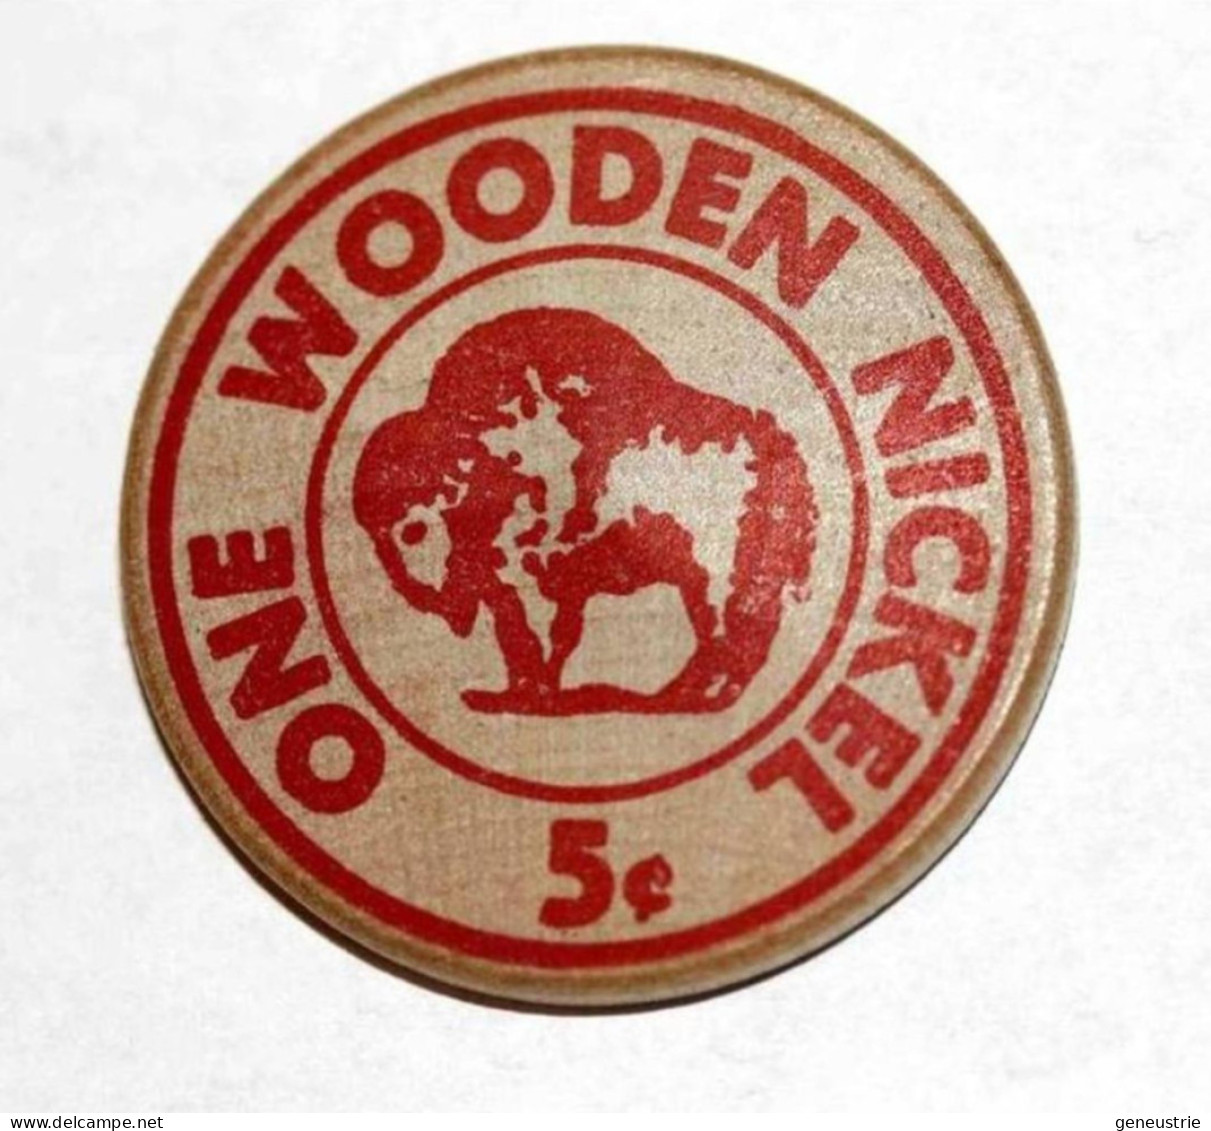 Rare Wooden Token 3c - Wooden Nickel - Jeton Bois Monnaie Nécessité 5 Cents - Bison - Coca-Cola - Etats-Unis - Monedas/ De Necesidad